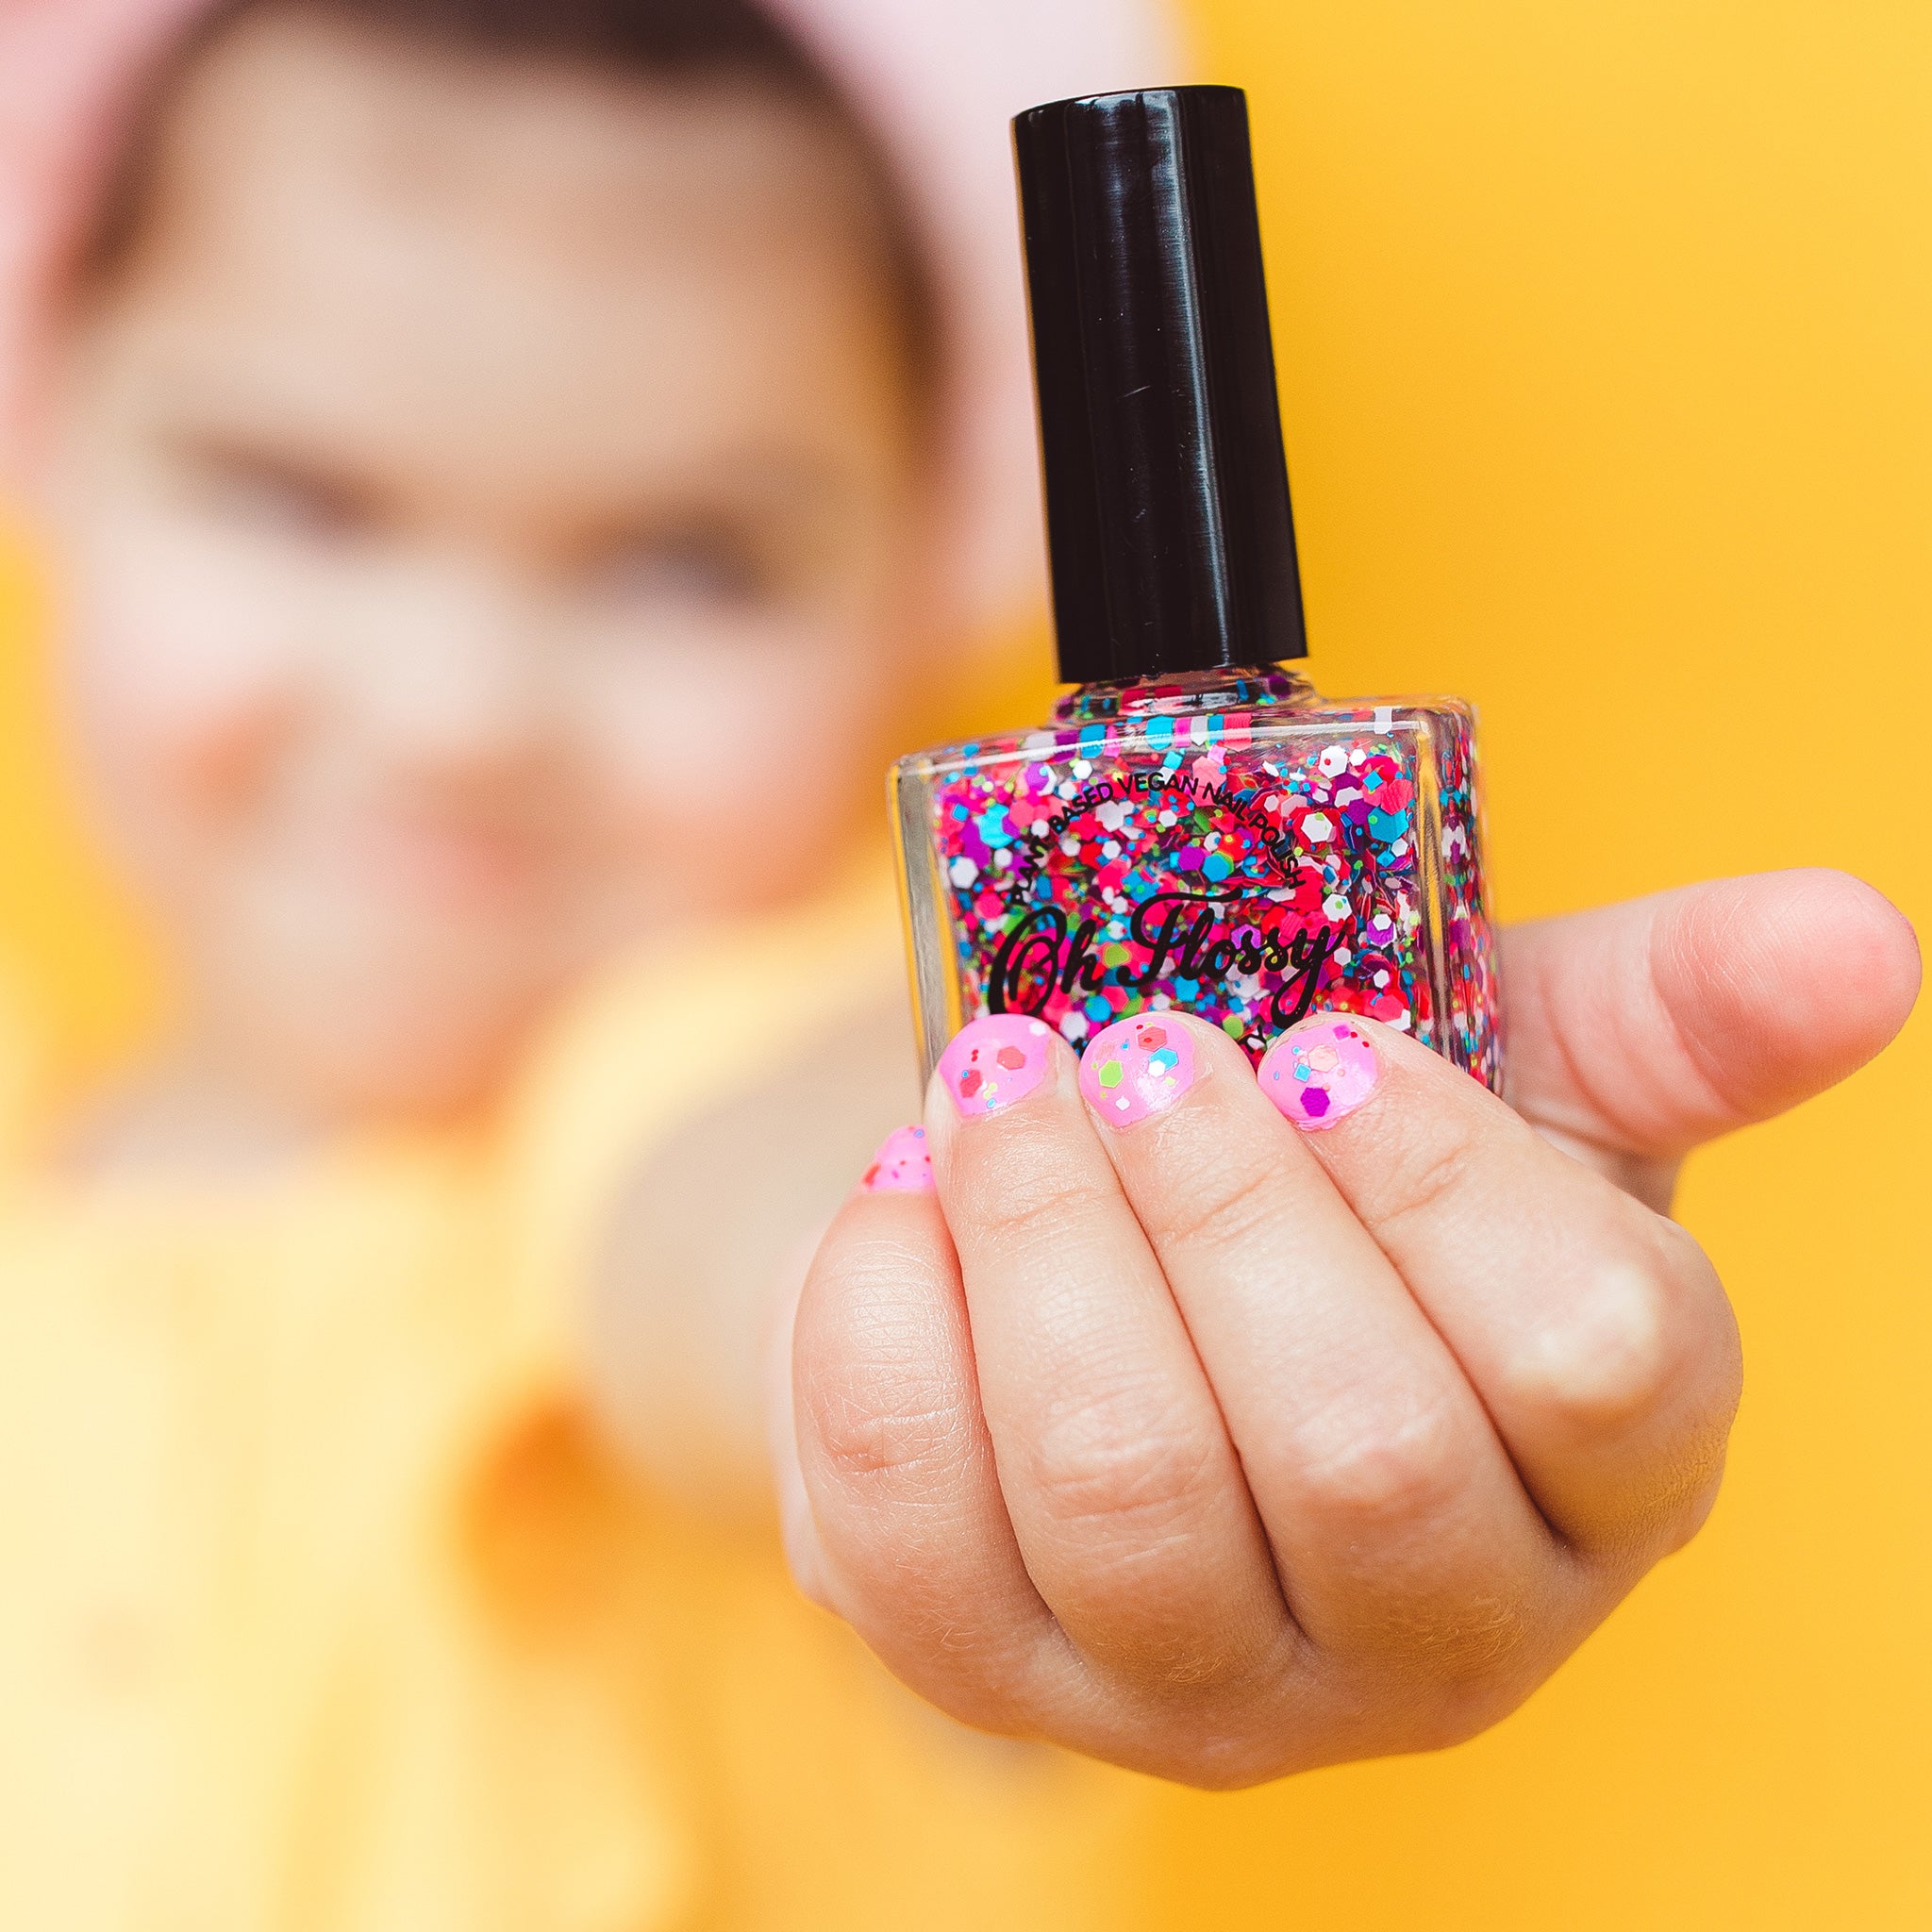 Oh-Flossy-Kids-Natural-Makeup-Nail-Polish-Confetti-Glitter